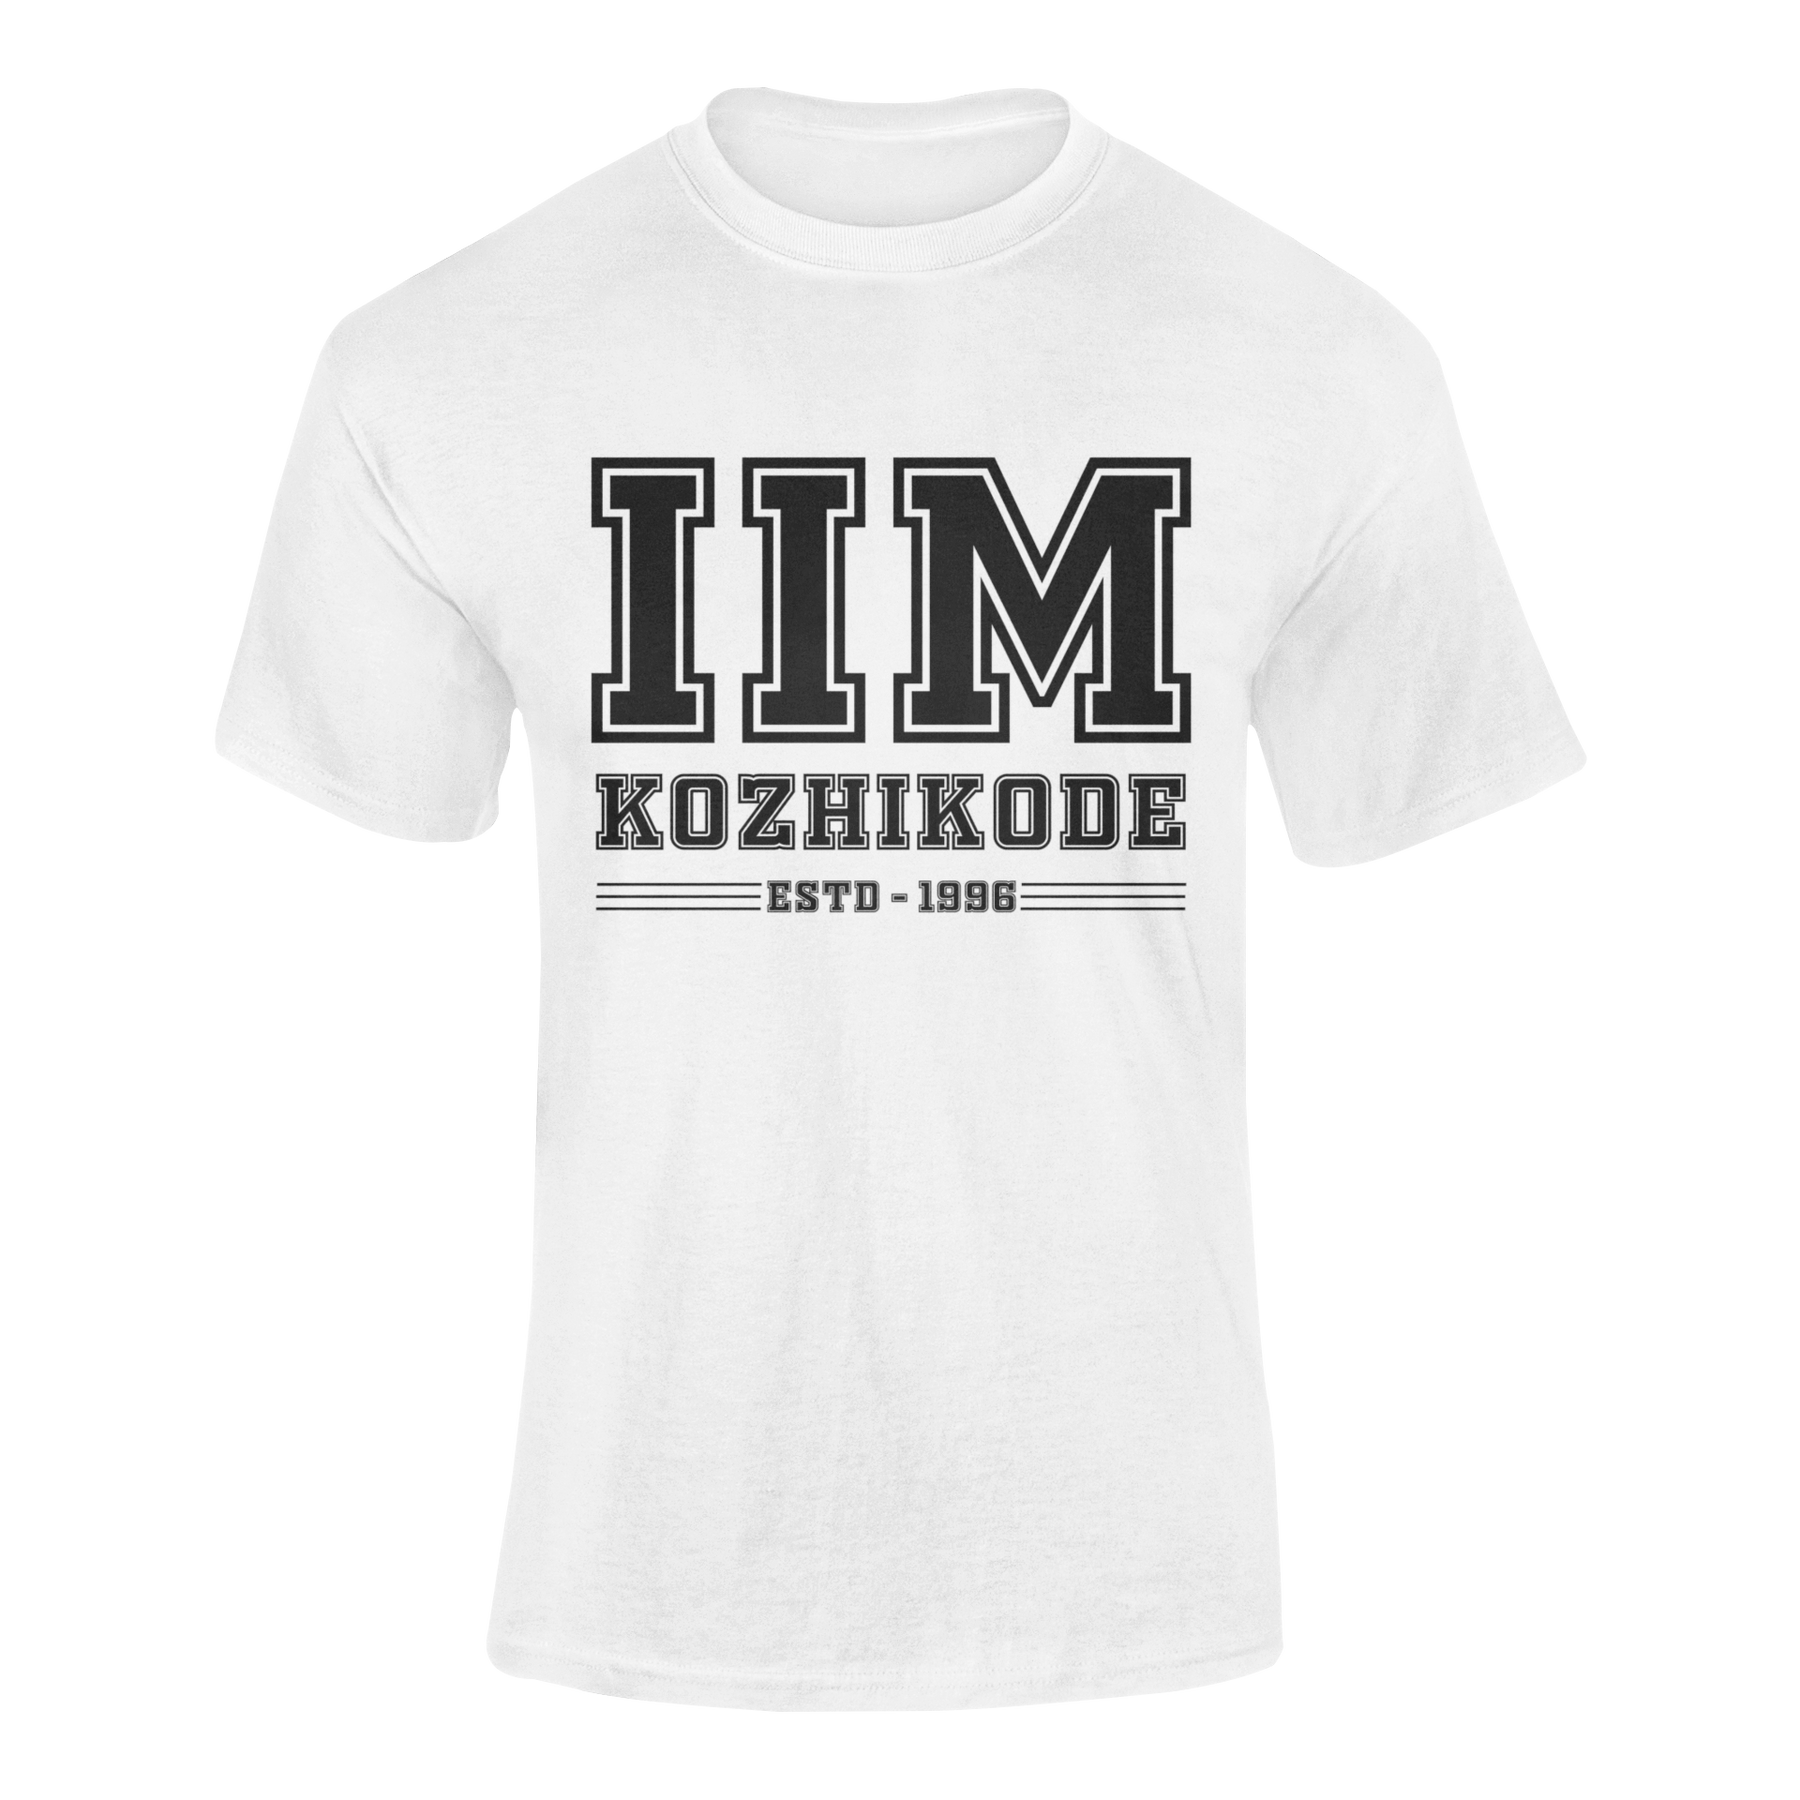 IIM KOZHIKODE - teeshood.com